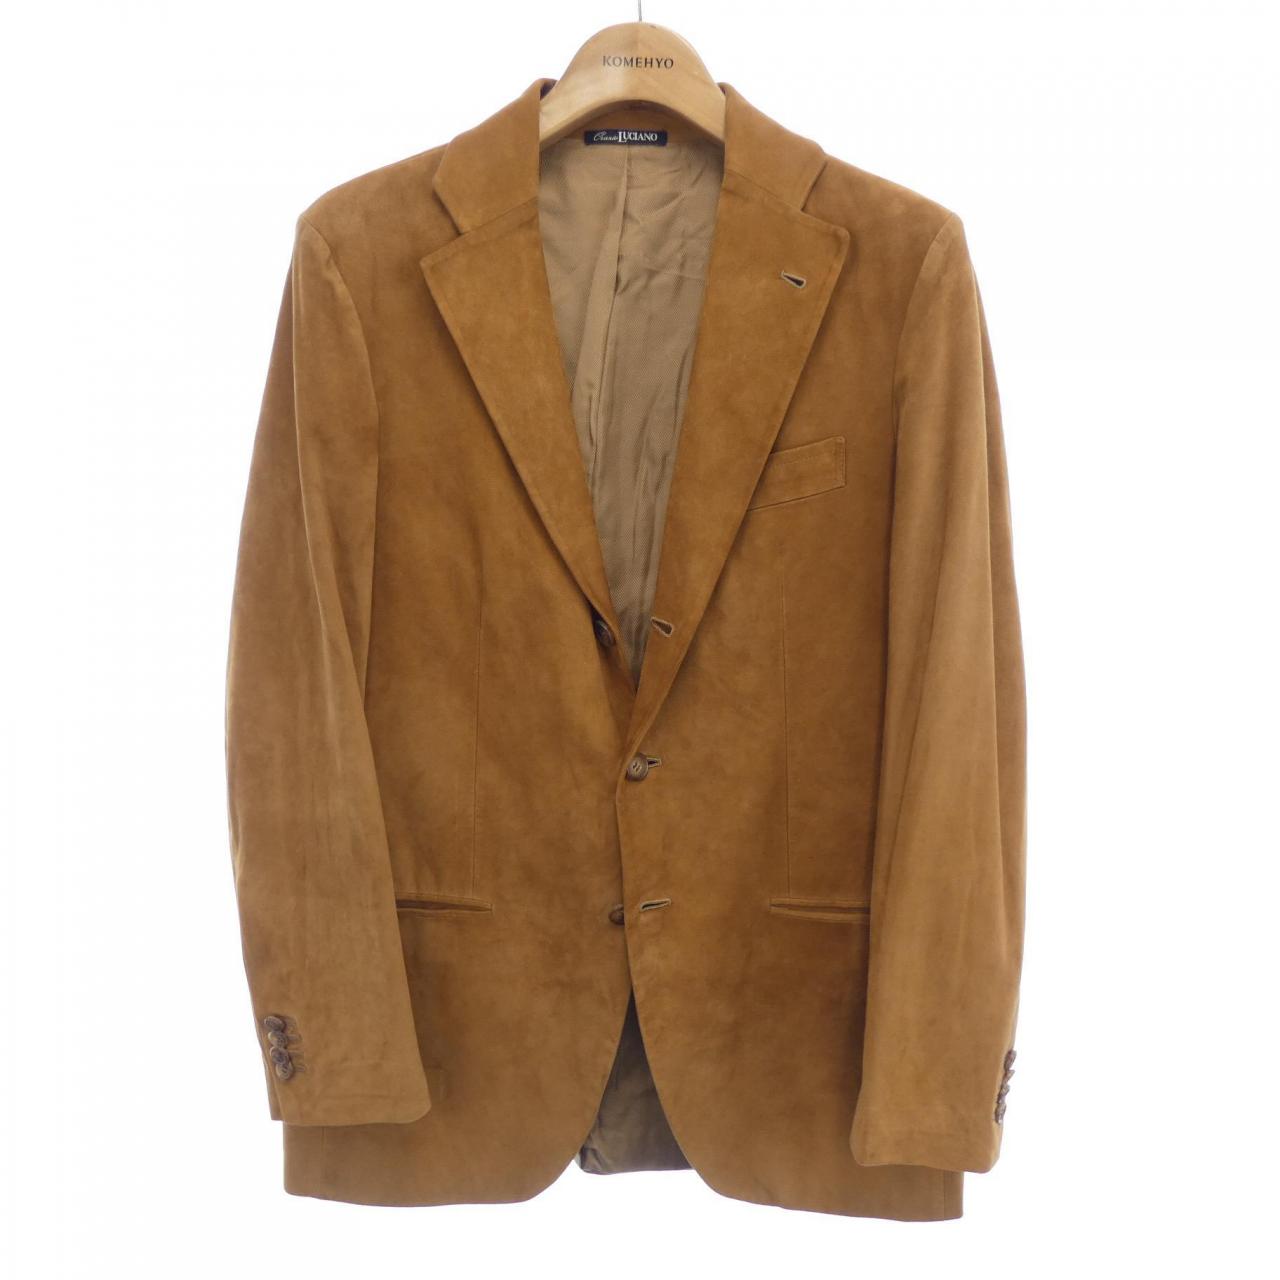 ORAZIO LUCIANO leather jacket